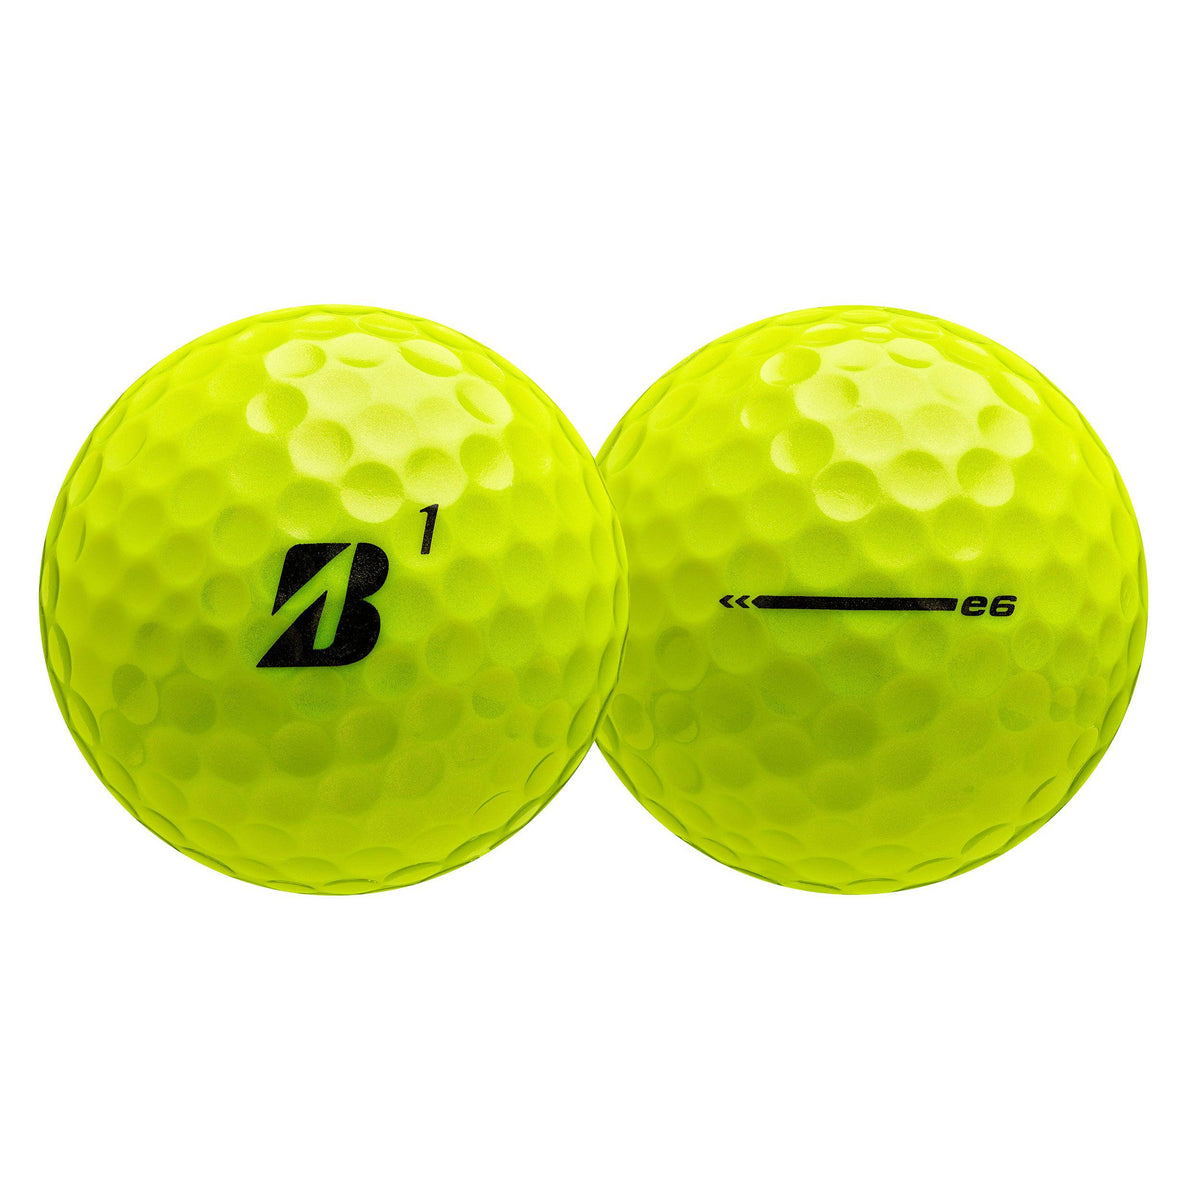 Bridgestone e6 Golf Balls 2023 - 6 Dozen Packs